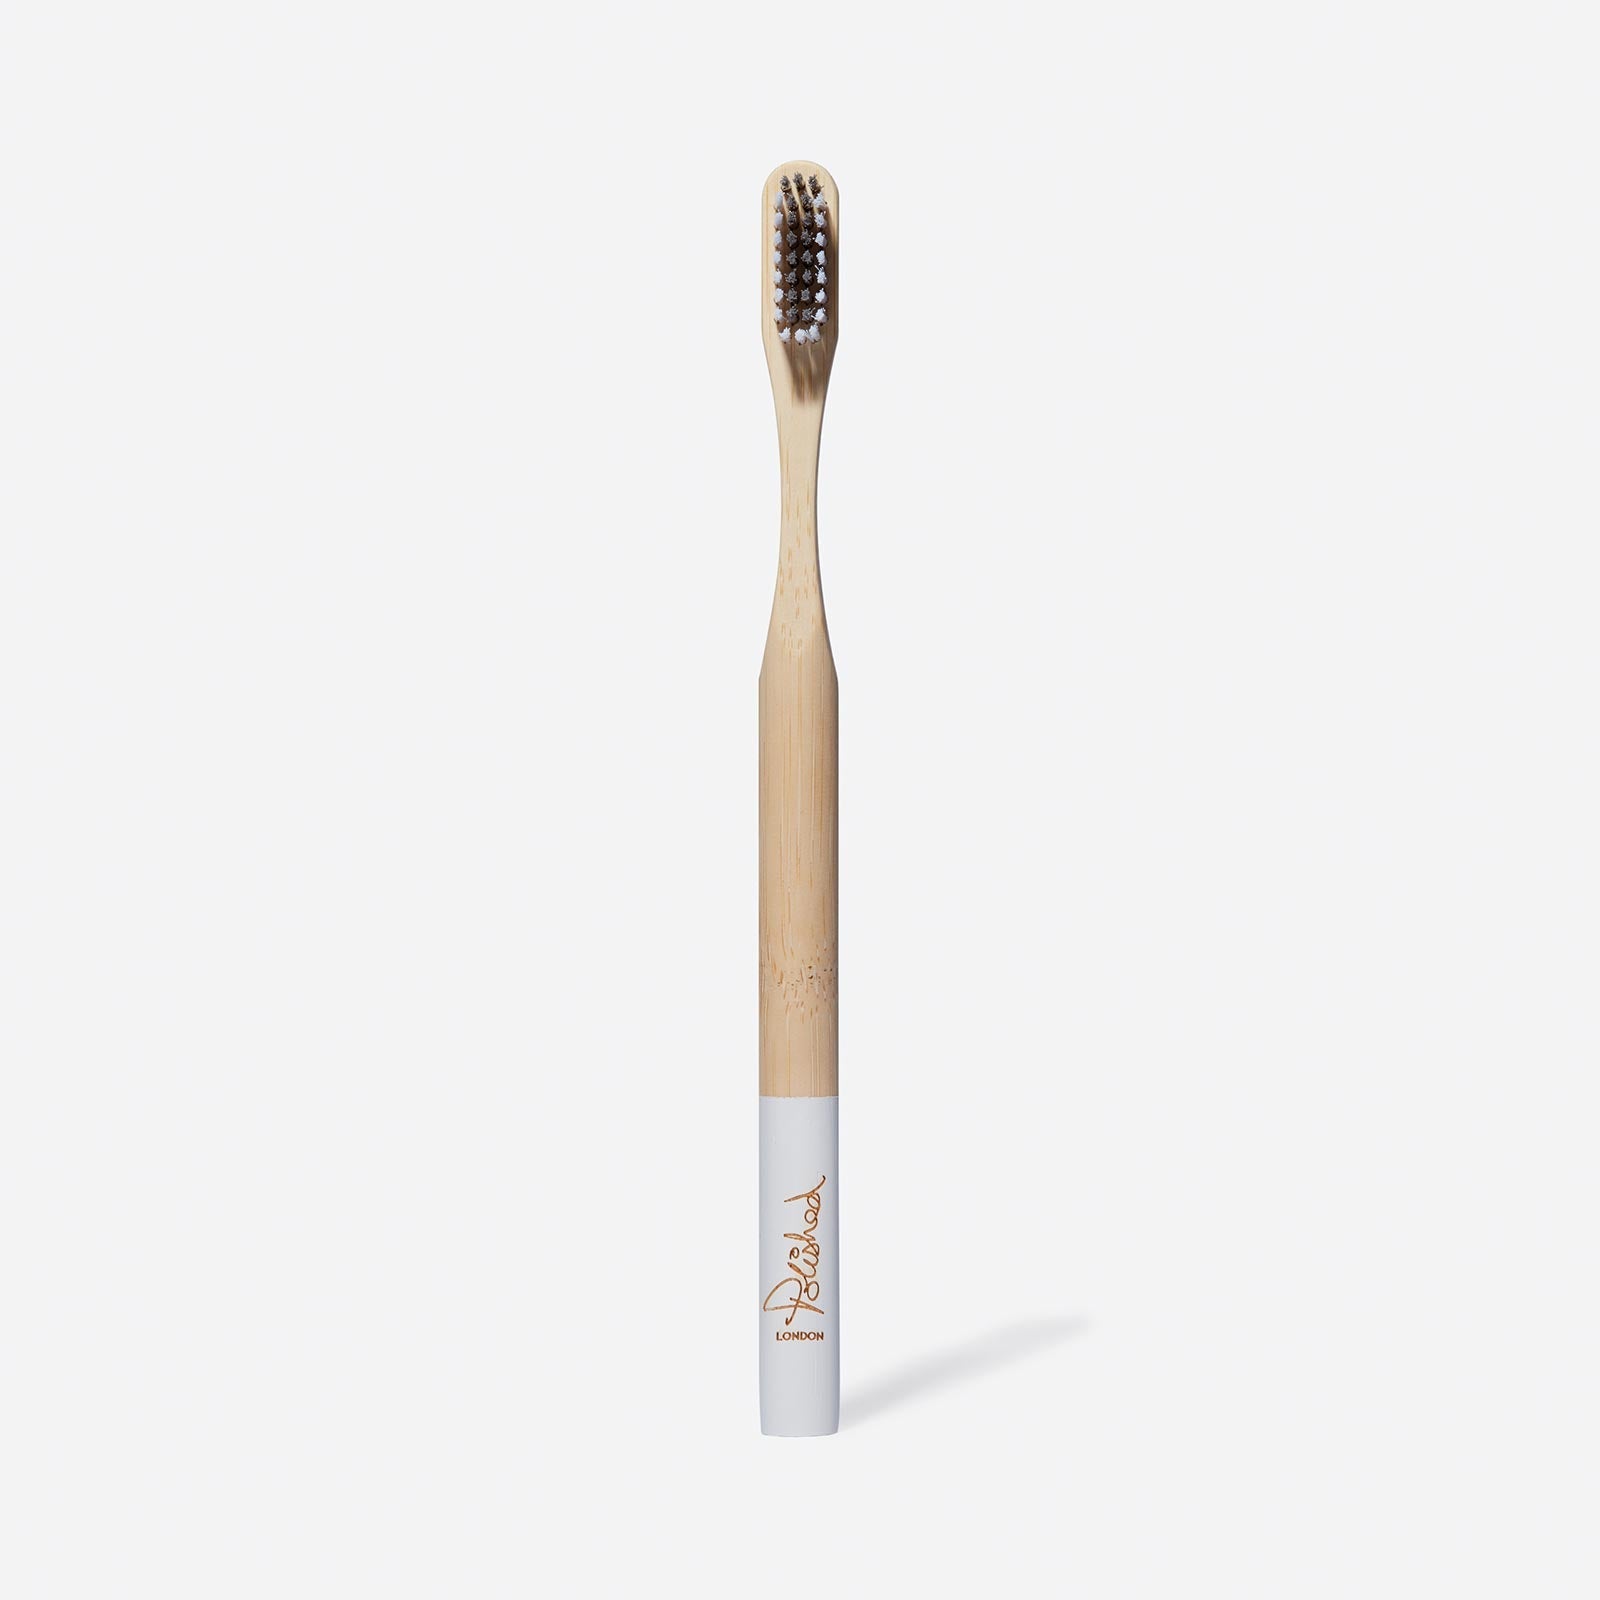 Free Bamboo Toothbrush